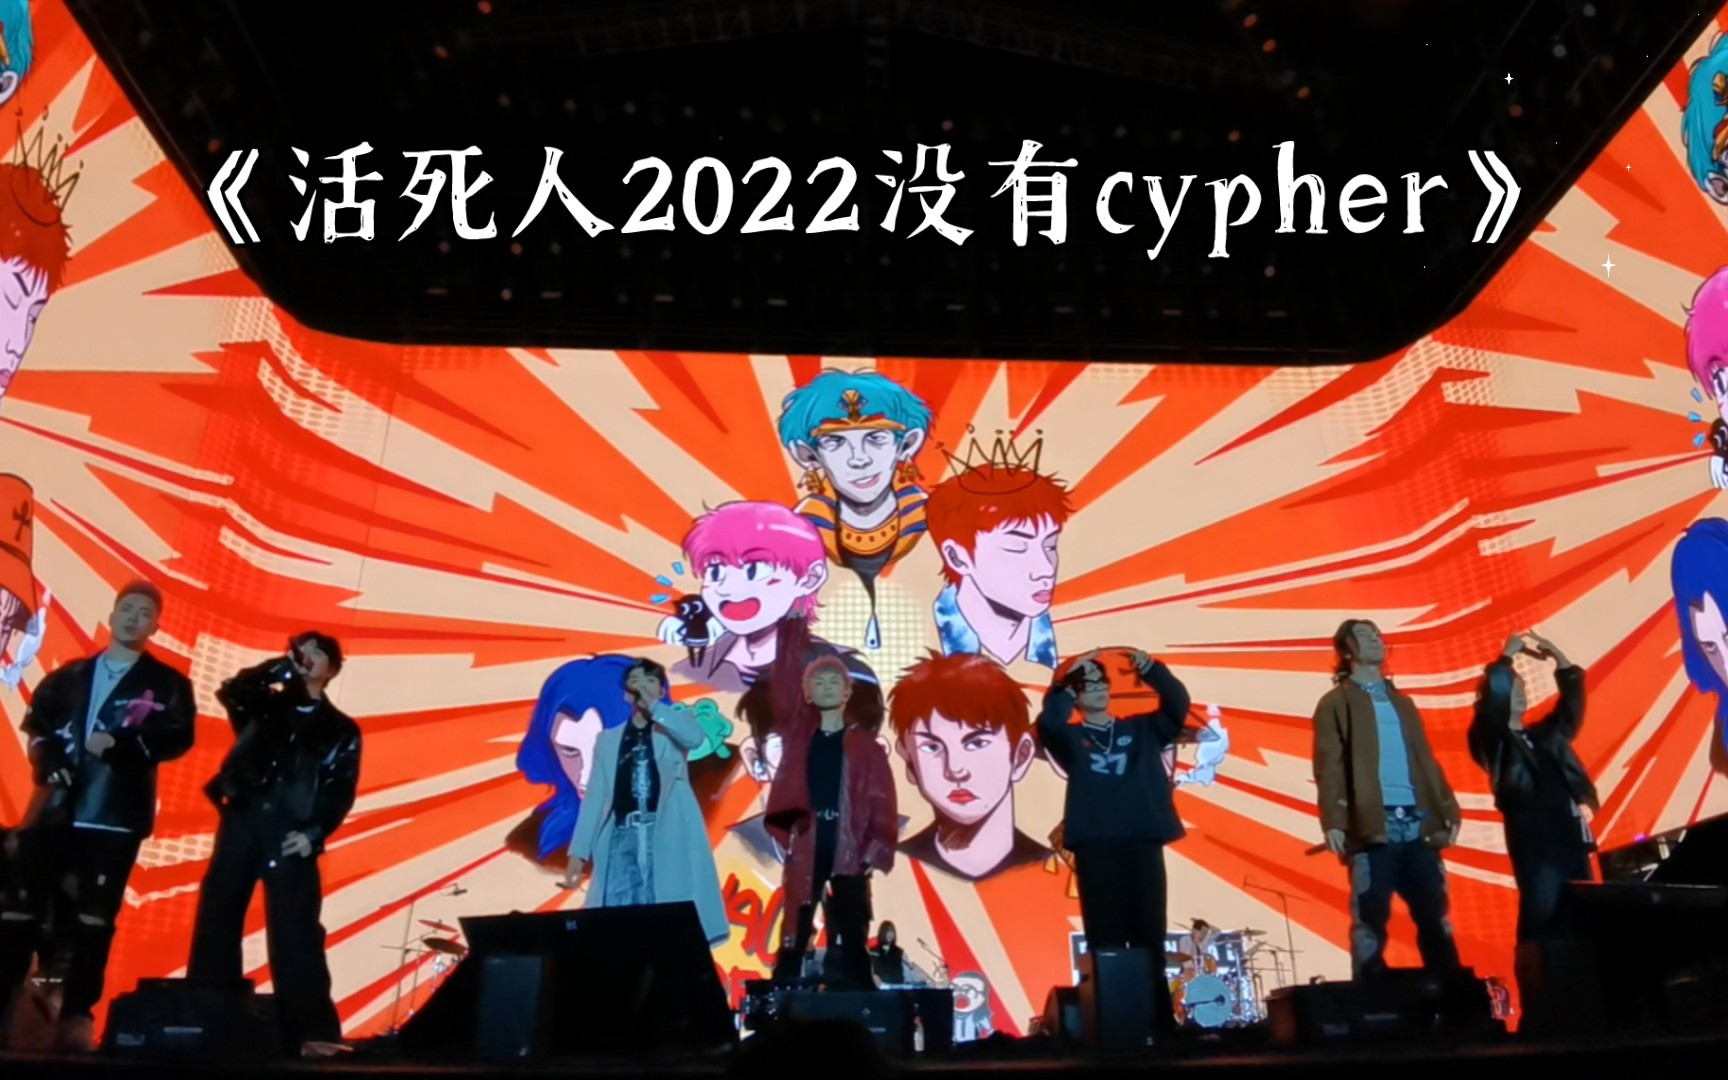 《活死人2022没有cypher》| 20231002太湖湾音乐节第一排视角